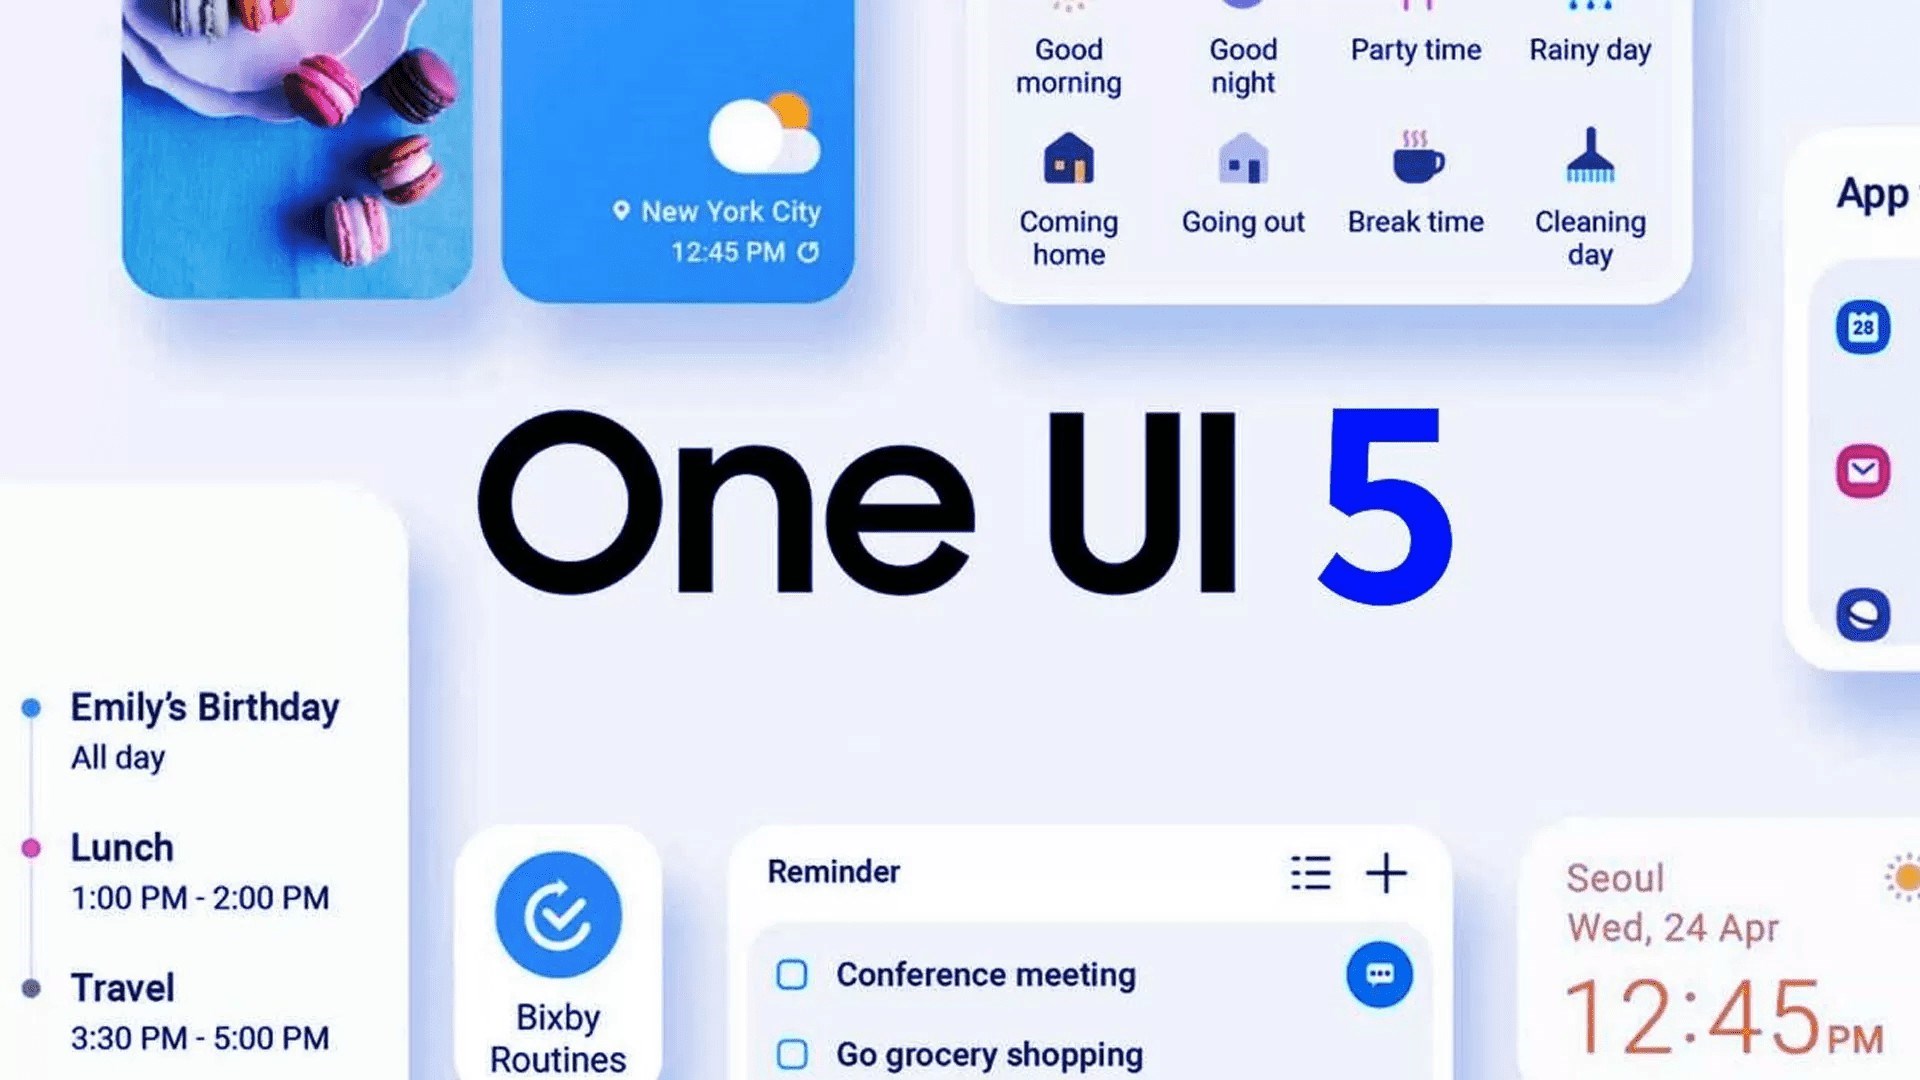 Samsung kalan tüm cihazları yıl sonuna kadar One UI 5'e geçirecek